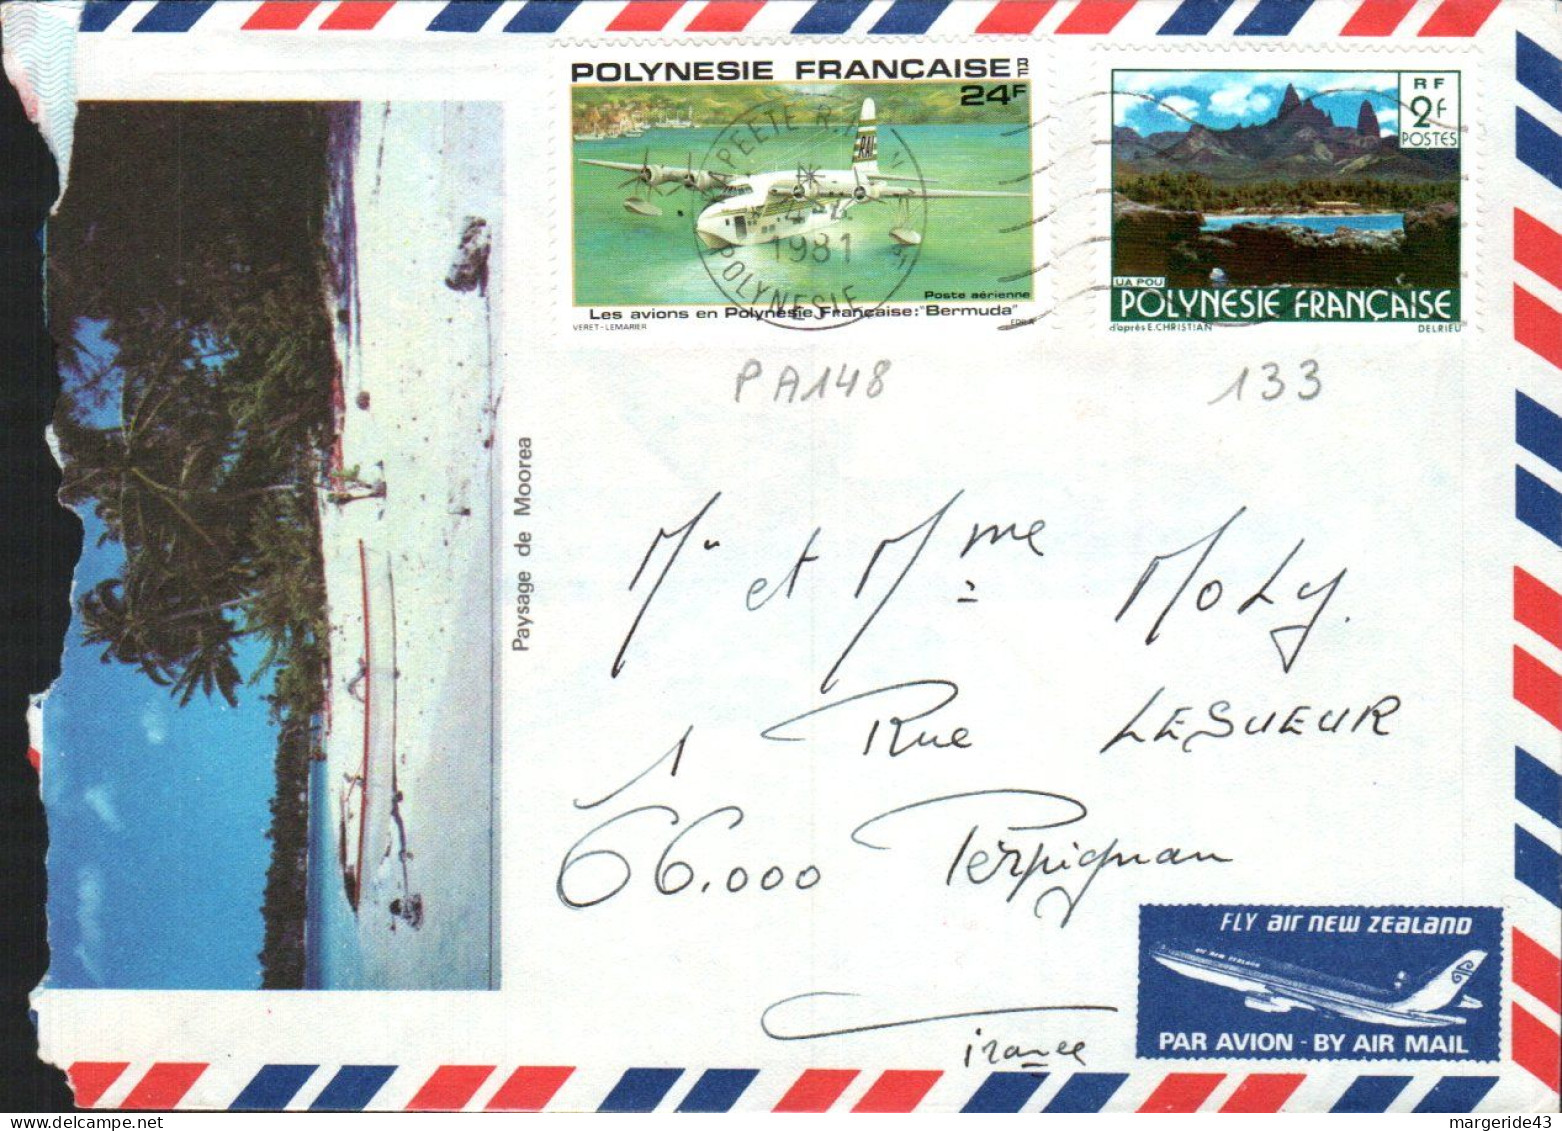 POLYNESIE AFFRANCHISSEMENT COMPOSE SUR LETTRE POUR LA FRANCE 1981 - Storia Postale